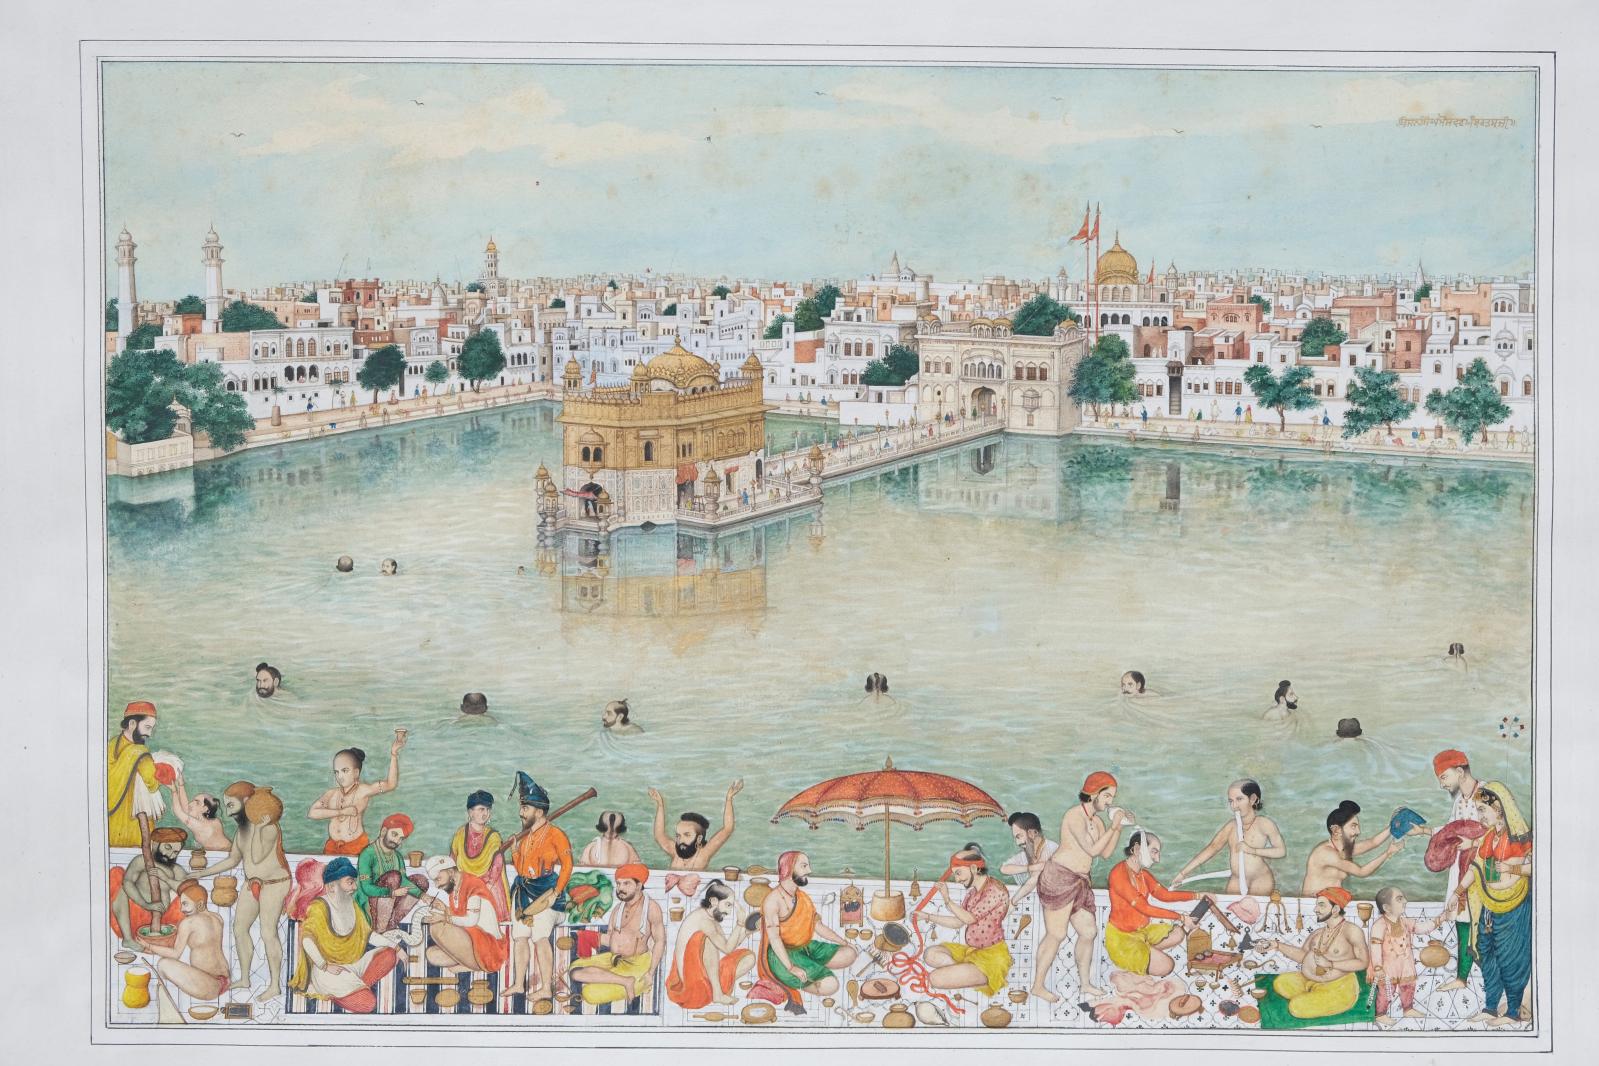 La vie au temple d’Or d’Amritsar